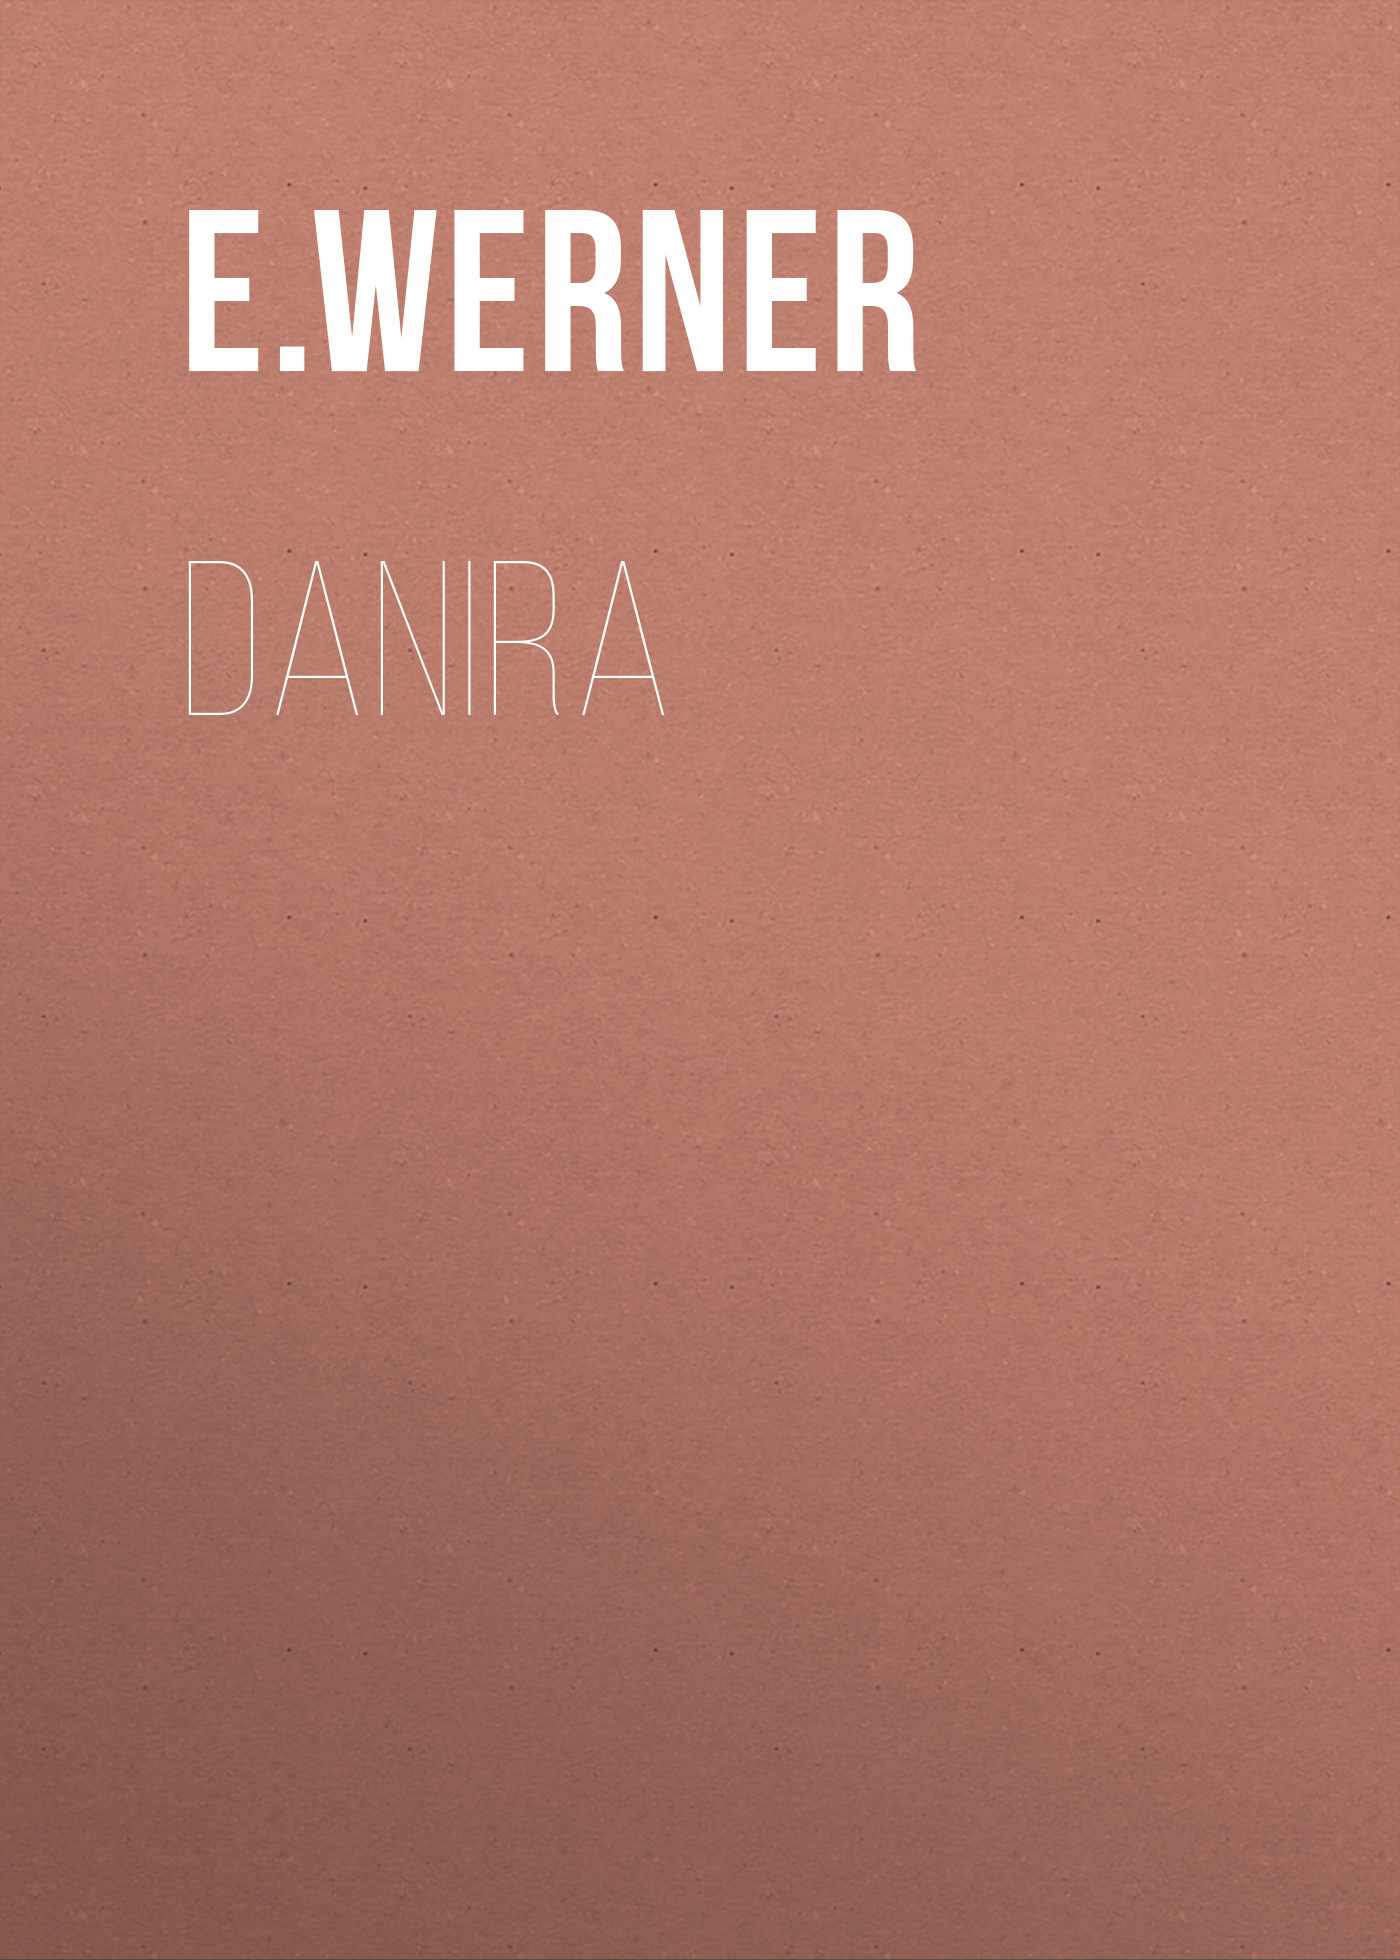 Книга Danira из серии , созданная E. Werner, может относится к жанру Зарубежная классика, Зарубежная старинная литература. Стоимость электронной книги Danira с идентификатором 34337114 составляет 0 руб.